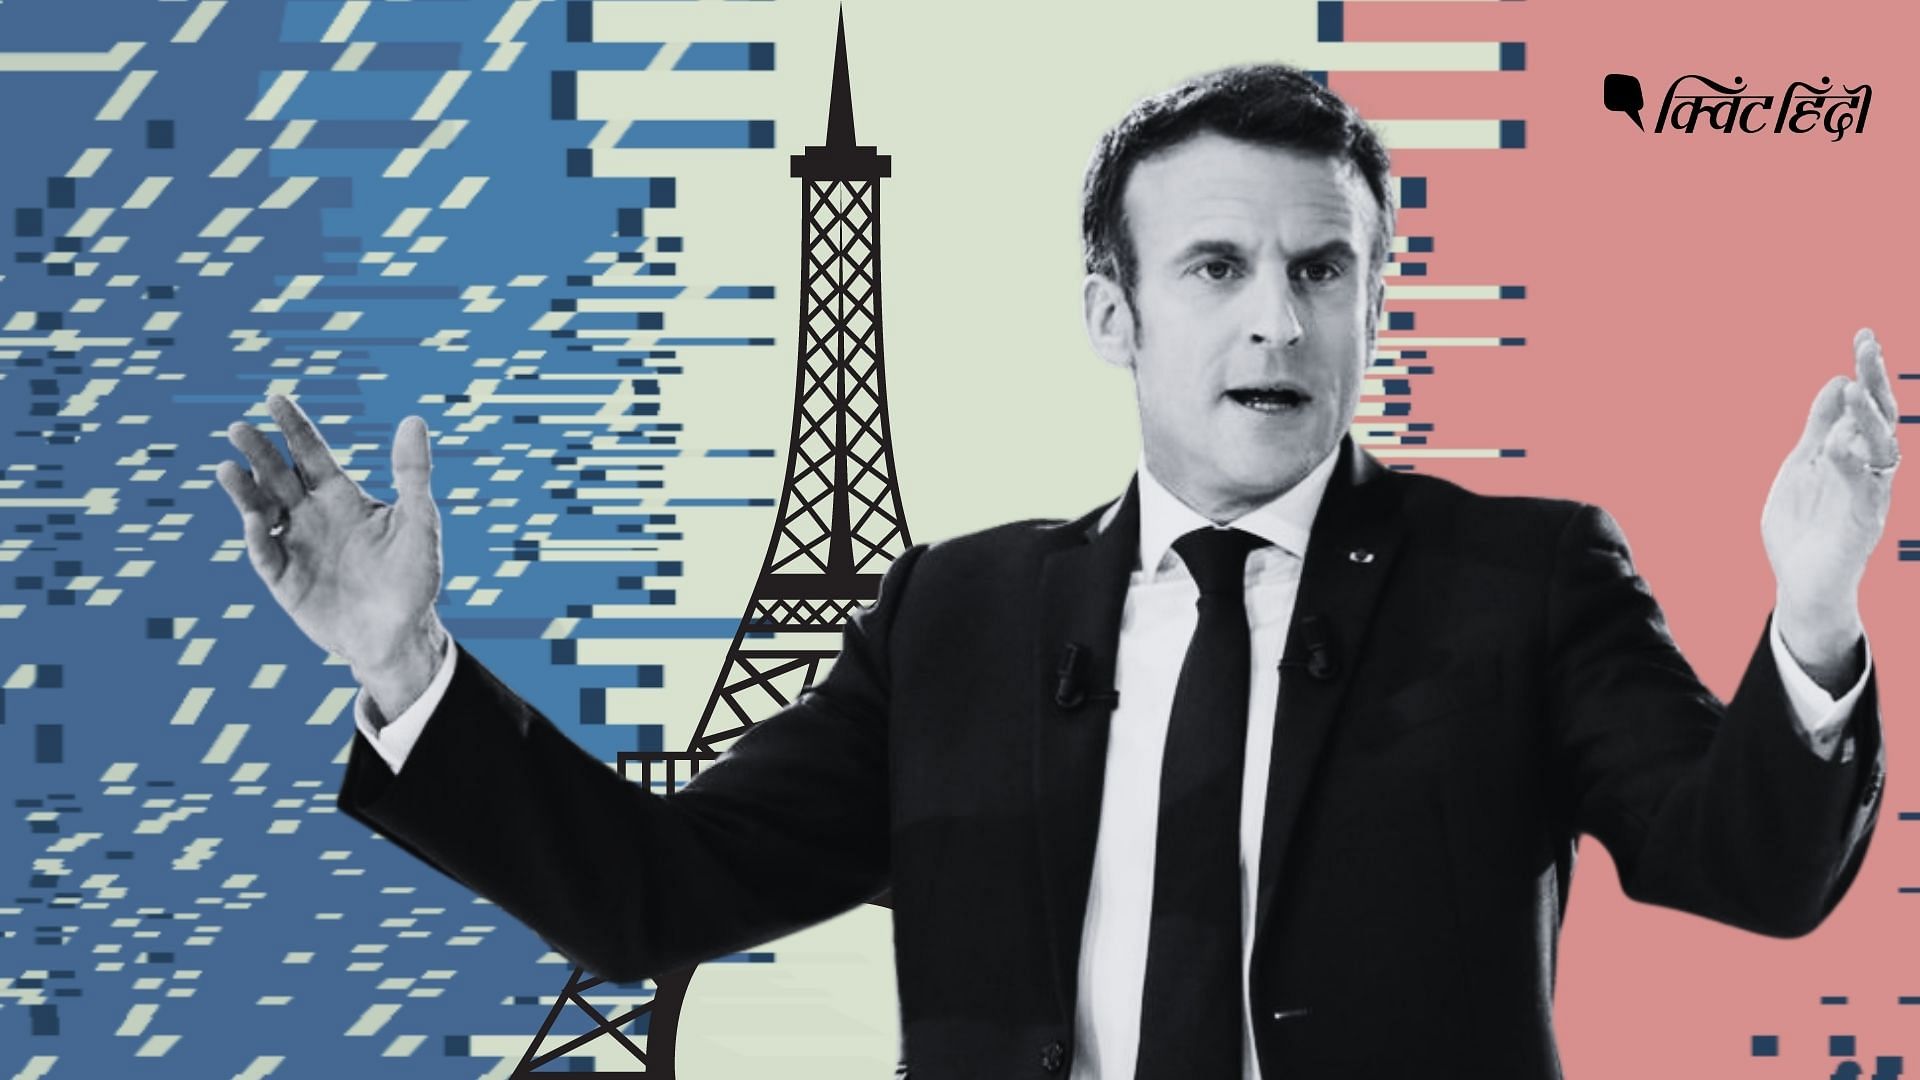 <div class="paragraphs"><p>Emmanuel Macron को अभी France की संसद में पाना होगा बहुमत,जानें आगे क्या चैंलेज?</p></div>